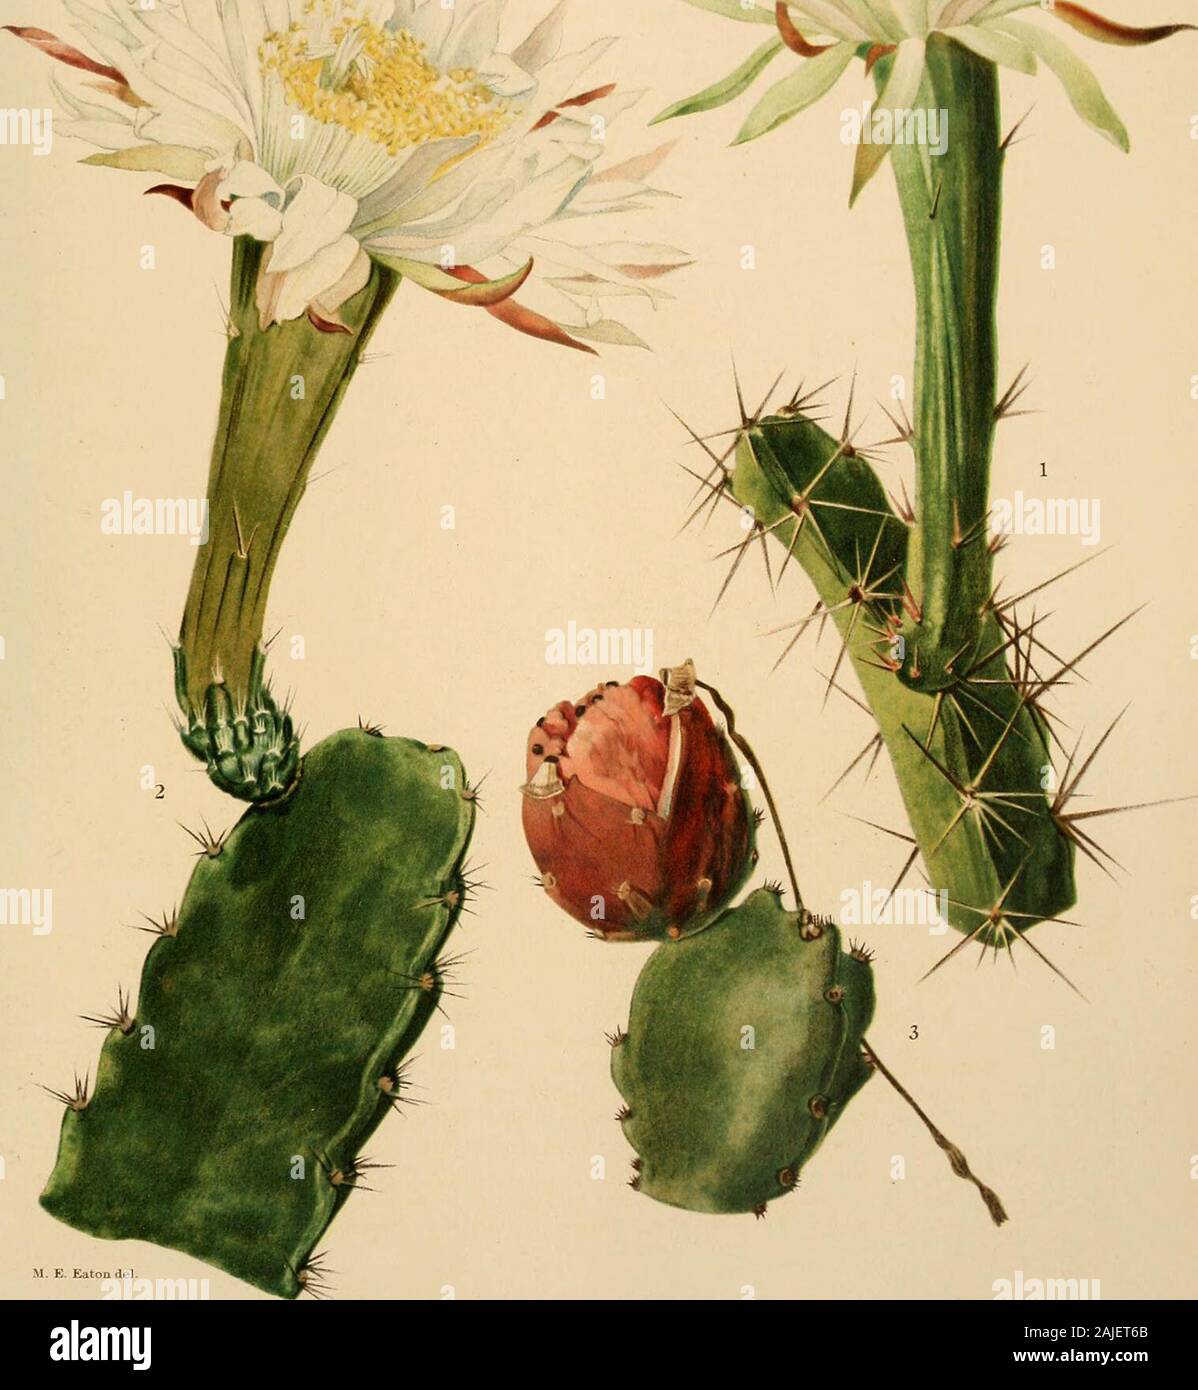 Les Cactaceae : descriptions et illustrations de plantes de la famille des cactus . ig. 184.-Acanthocere f Charles Deering à Buena Vista. En Floride, en mai 1918. Cereus undulatus Pfeiffer (Enum. Cact. 107. 1837), basé sur un spécimen dans le DresdenGarden, est habituellement appelé Cereus acutangulus, mais n'a pas été décrite par Pfeiffer à theplace ici cités. Un spécimen dans le jardin de Berlin a été également appelé Cereus undulatus par D. Dietrich (Syn.PI 3 : 104. 1843) et décrits, mais devraient être renvoyés ailleurs. Il est de très differentrelationship, étant très mince, vert terne, 10 côtes fines. Les fleurs sont larg Banque D'Images